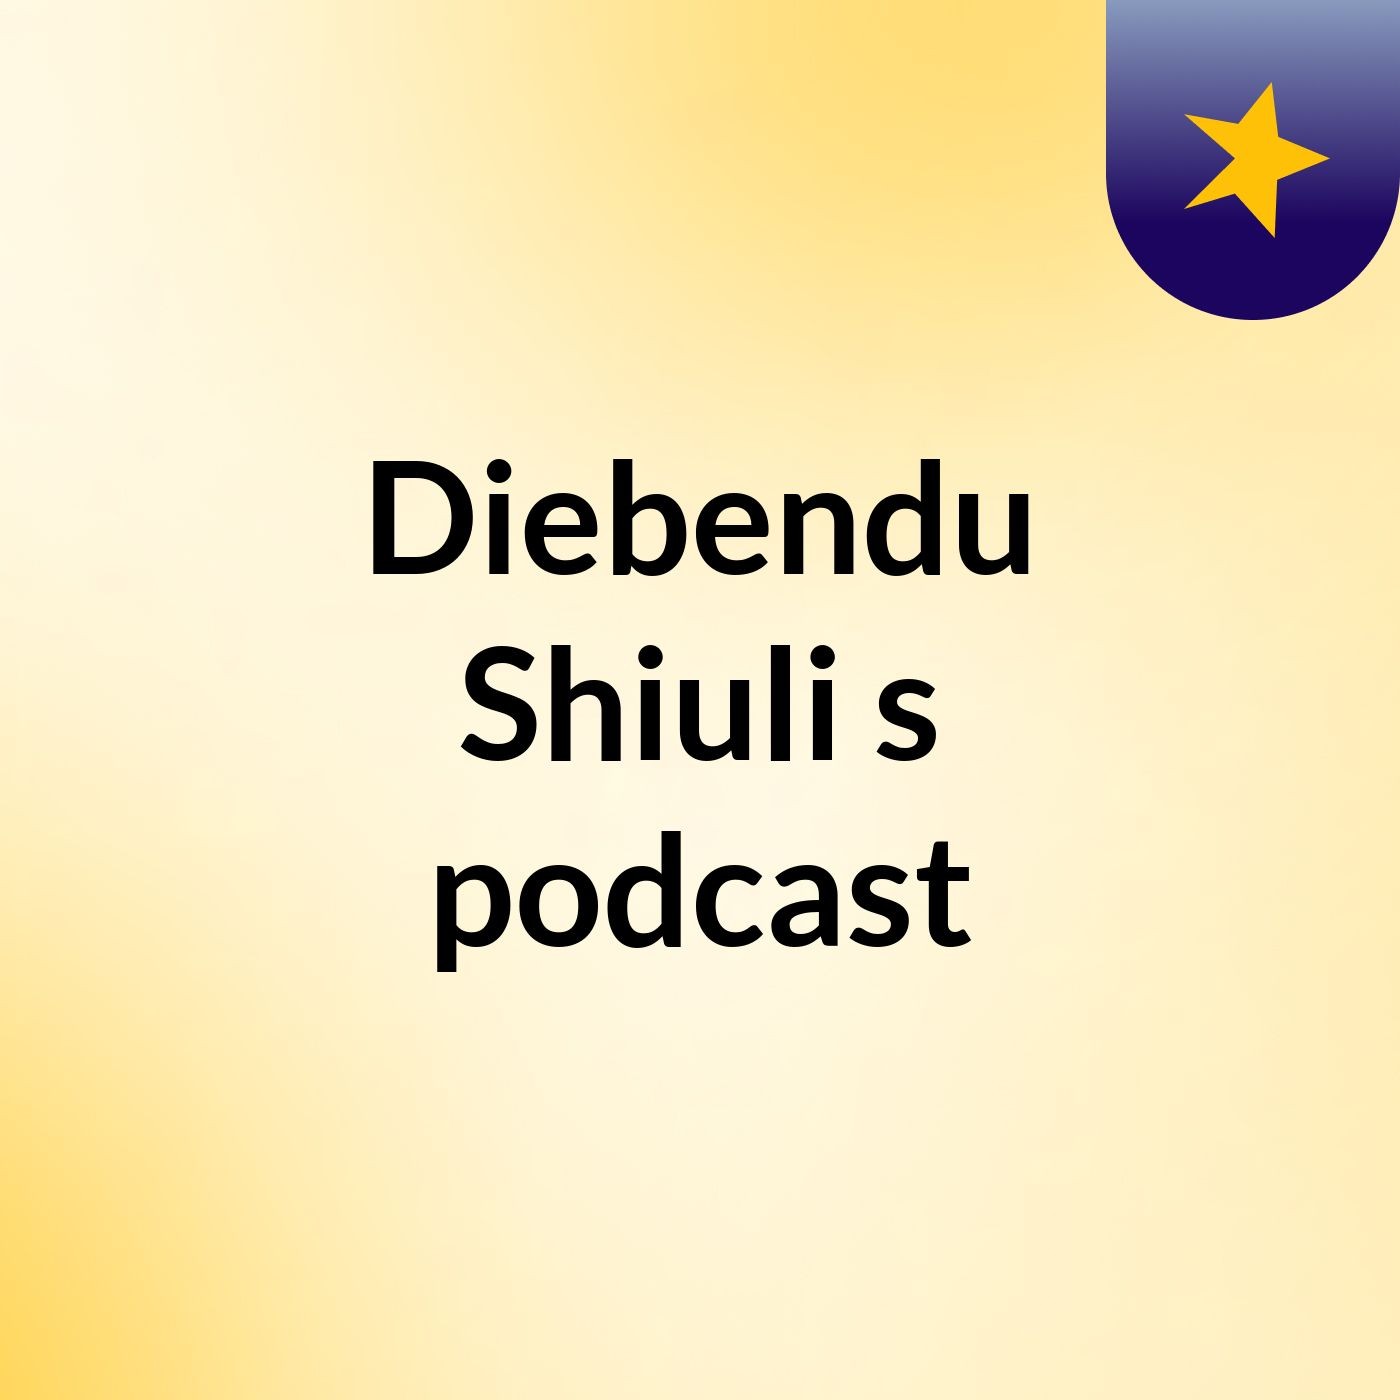 Diebendu Shiuli's podcast